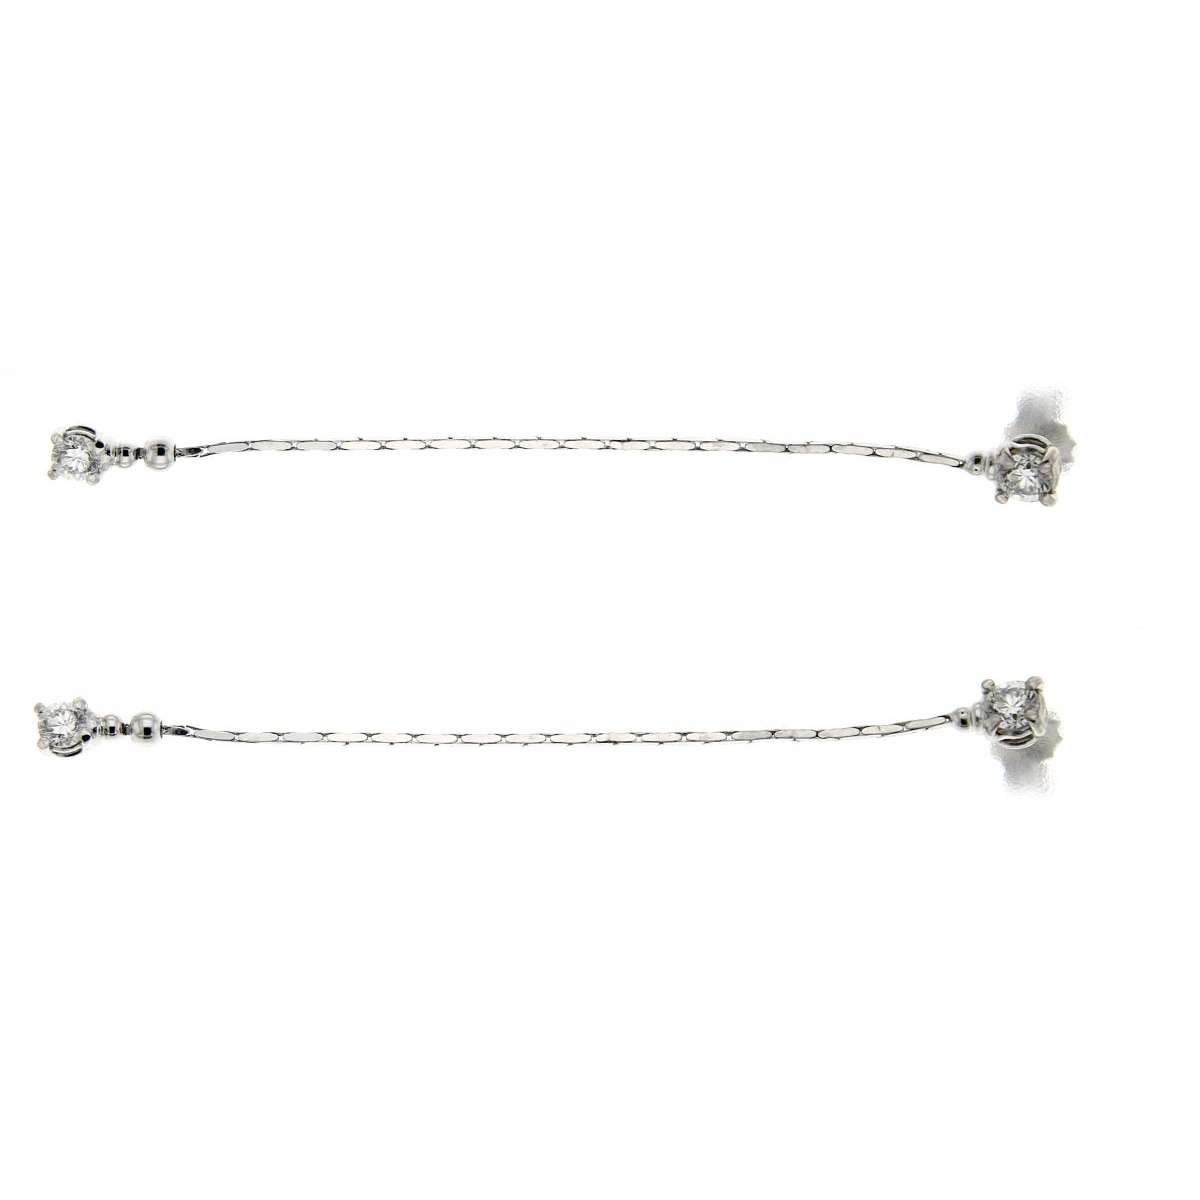 Dangling earrings 0.46 carats diamonds G-VS1